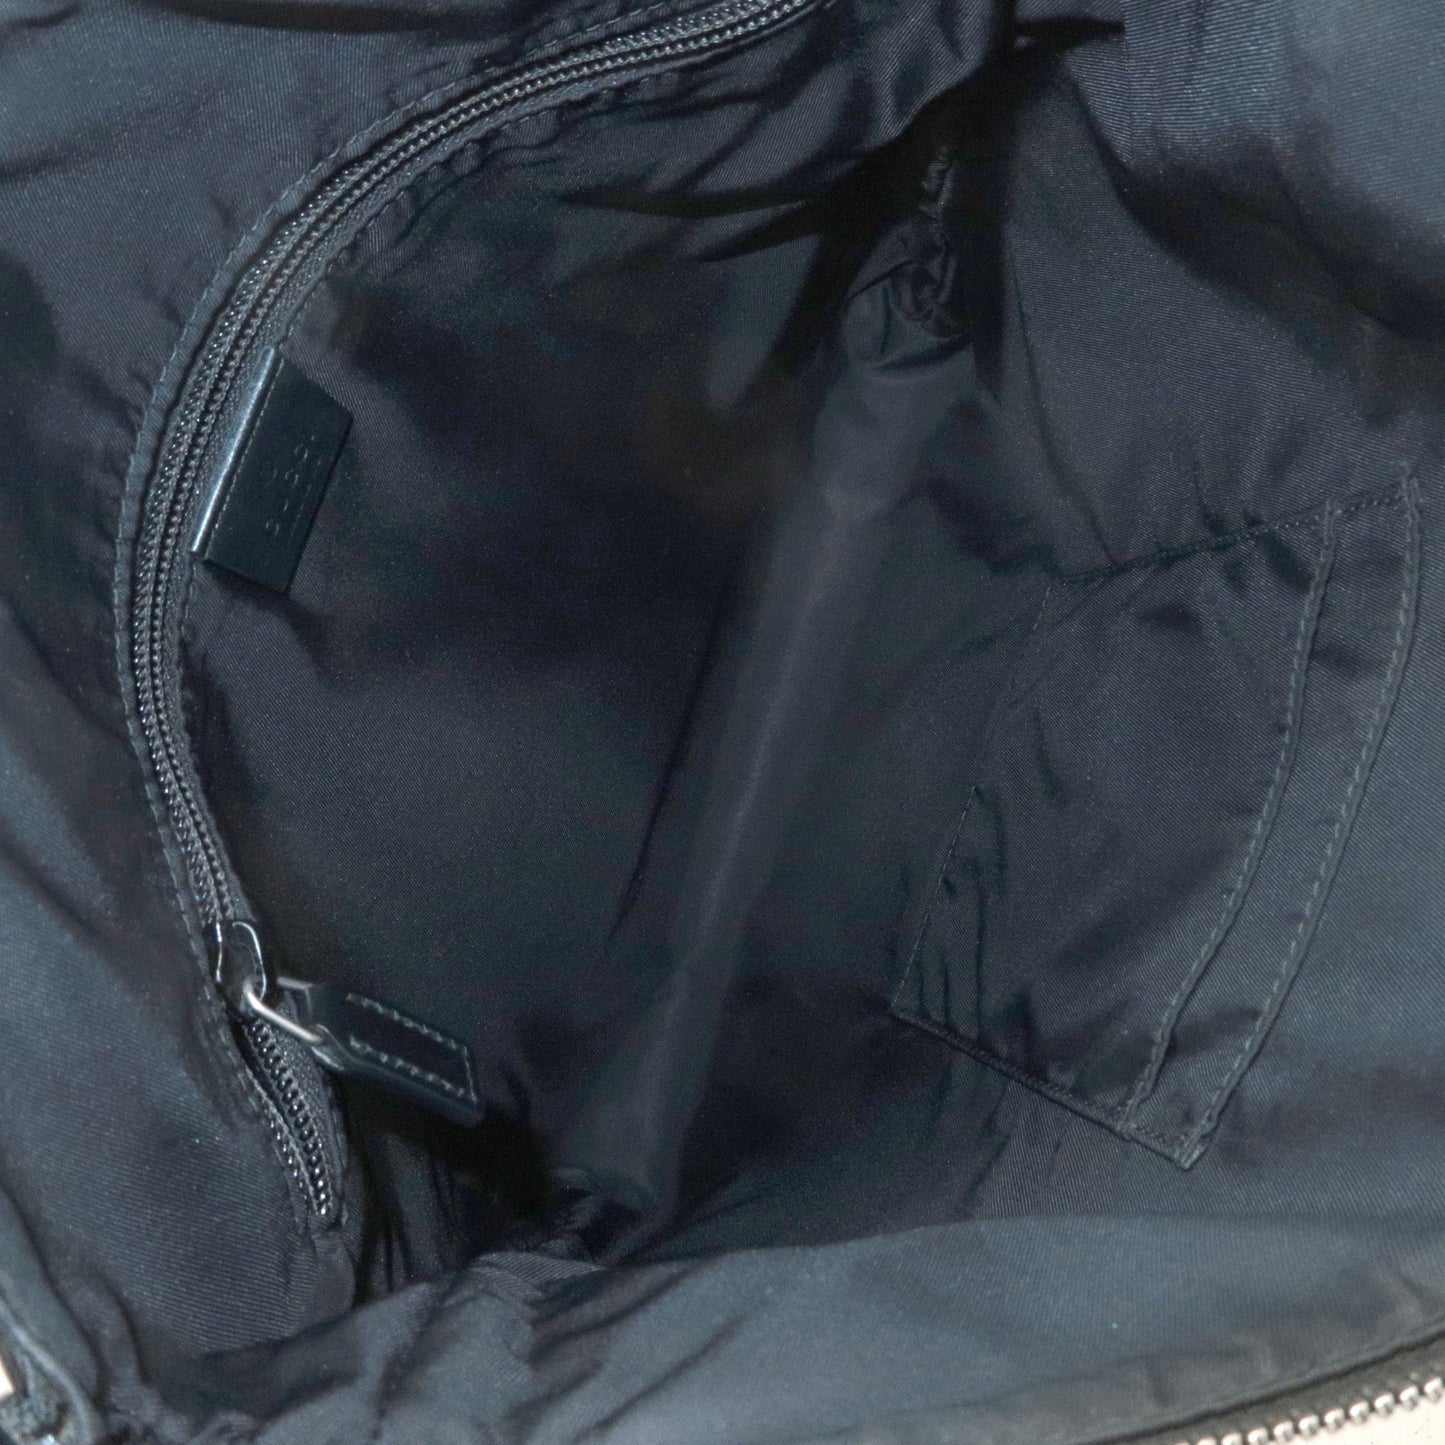 GUCCI Sherry GG Supreme Leather Shoulder Bag Beige Black 387111